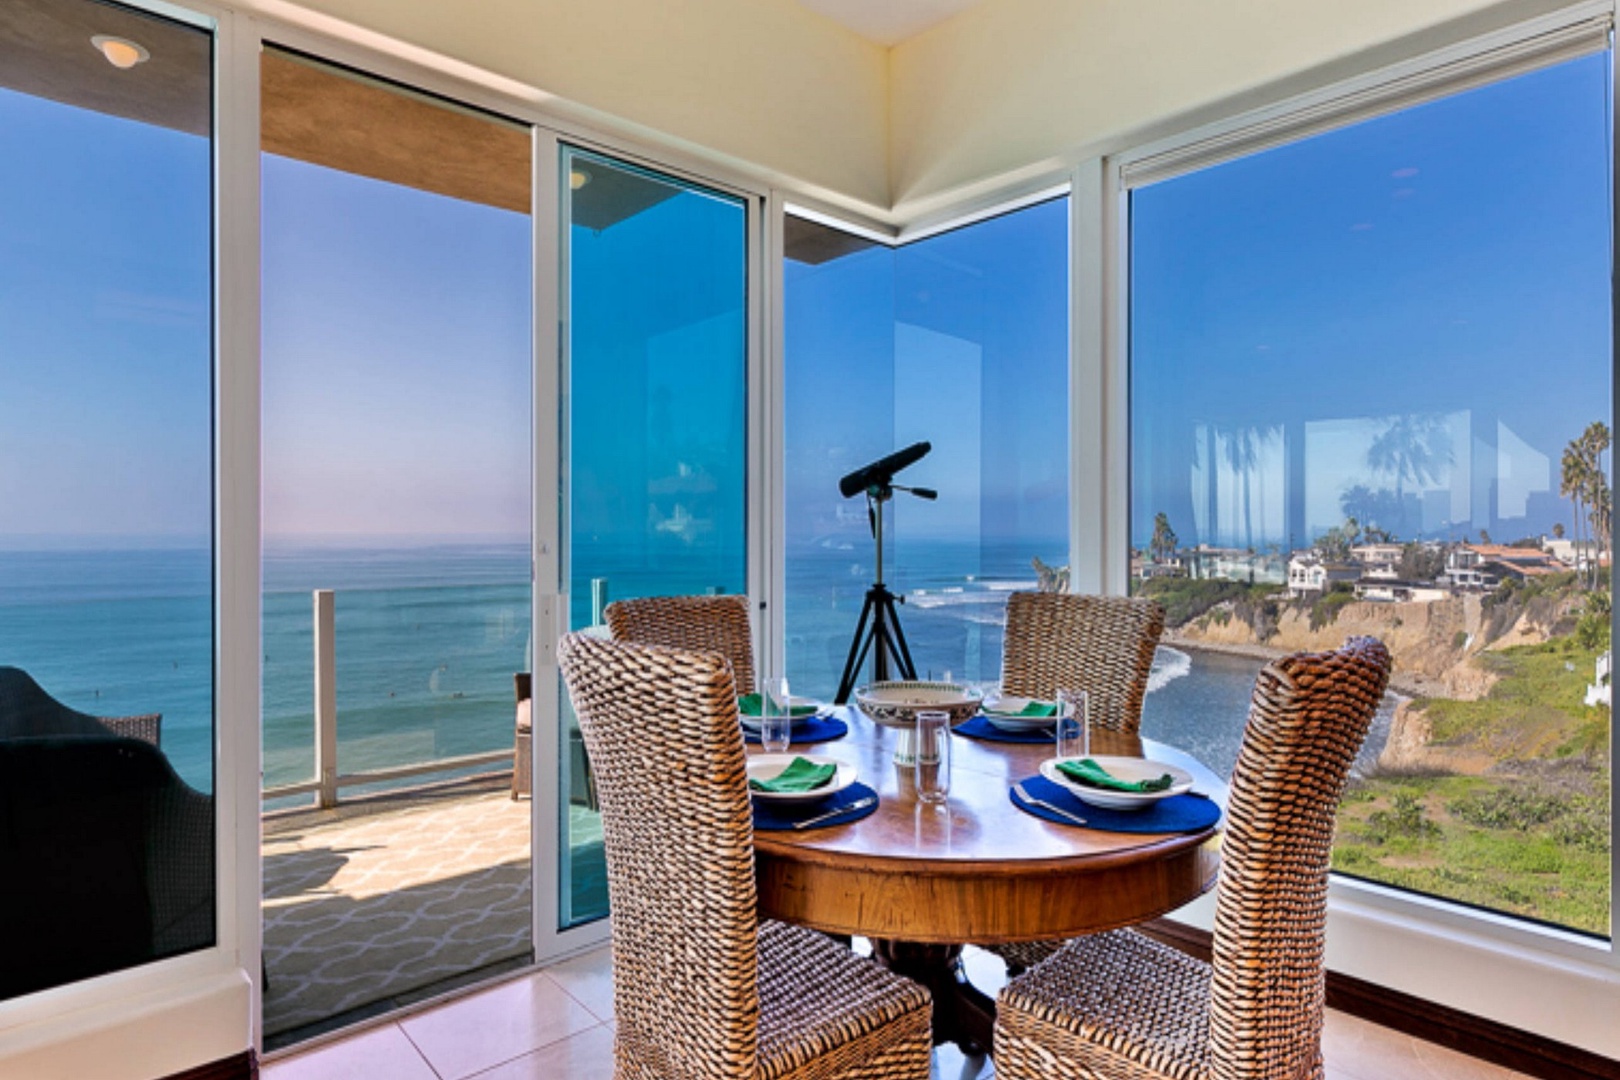 Ocean view dining nook